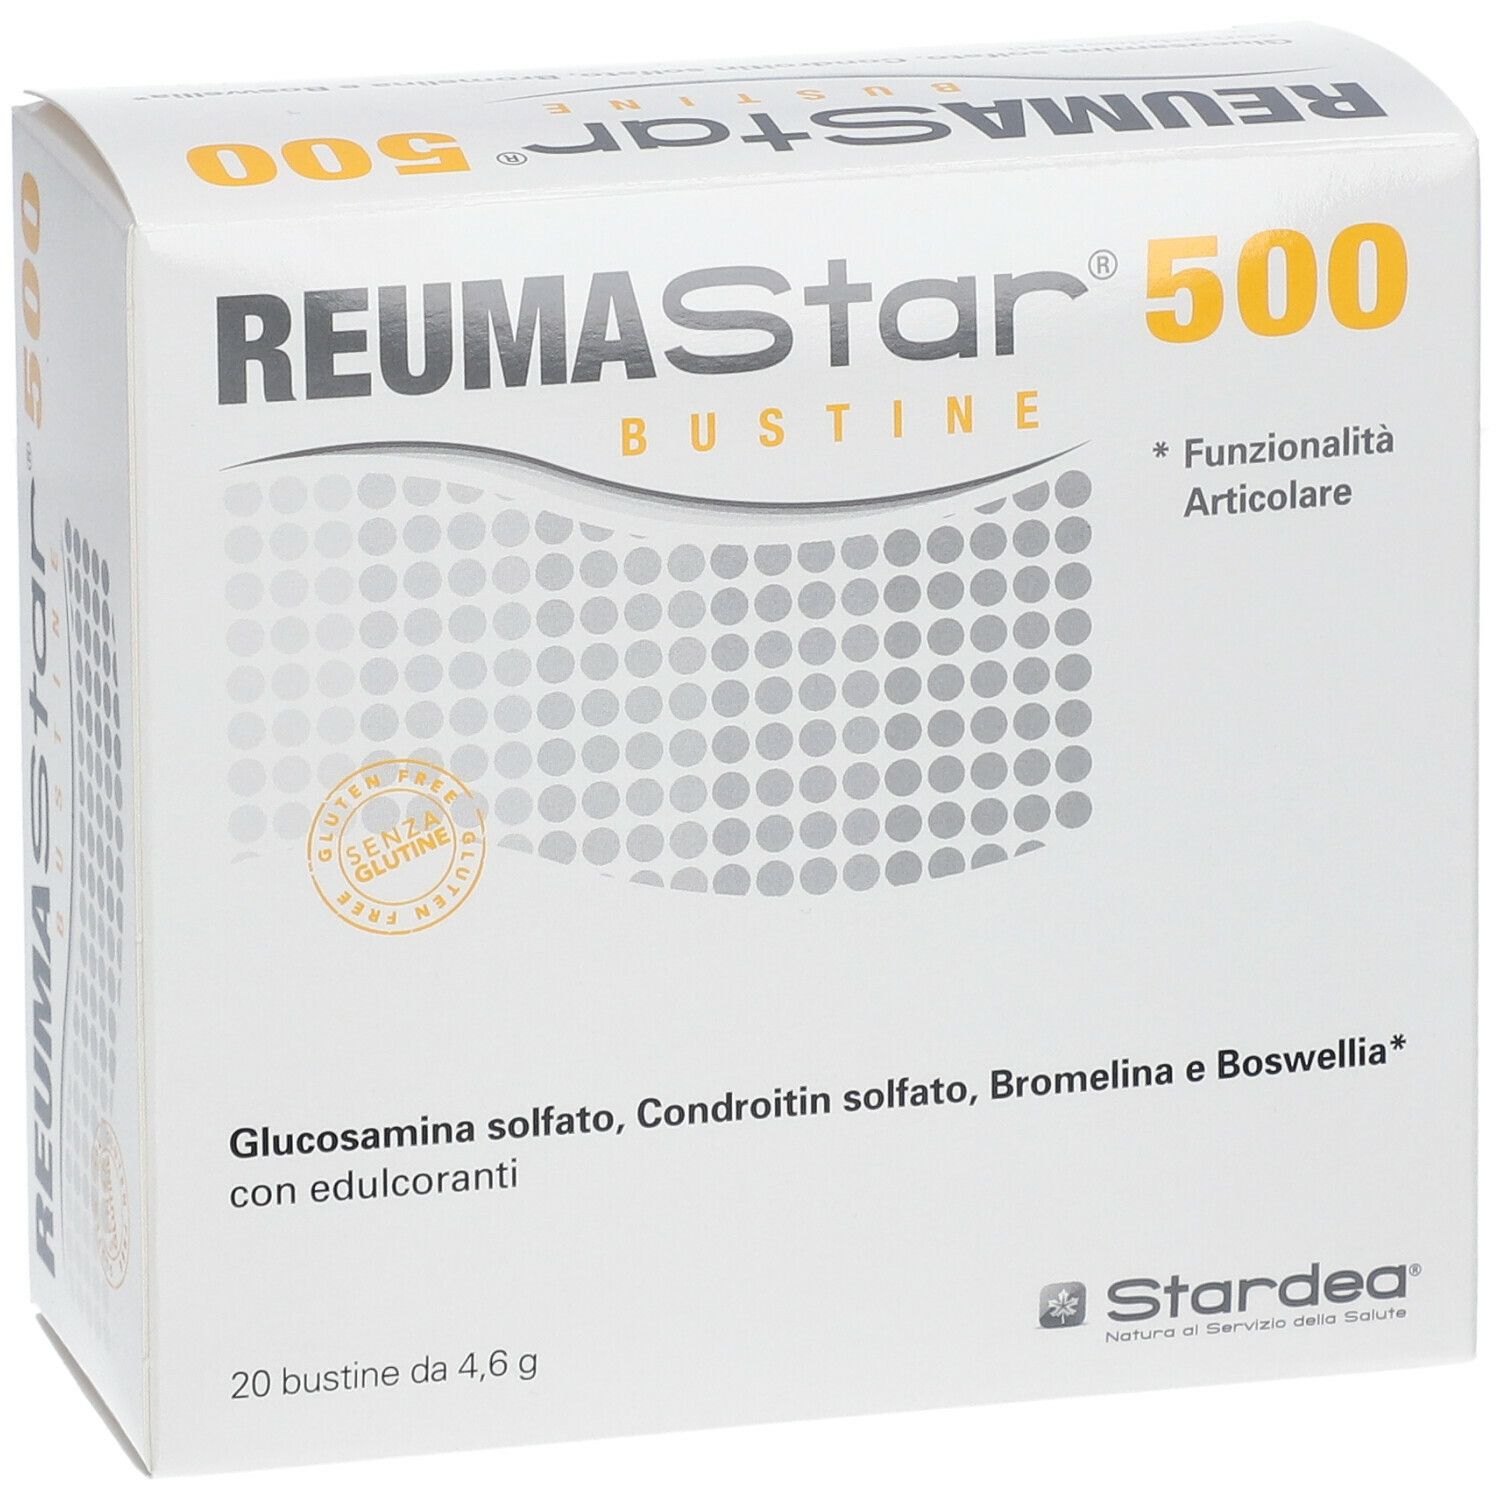 REUMAStar® 500